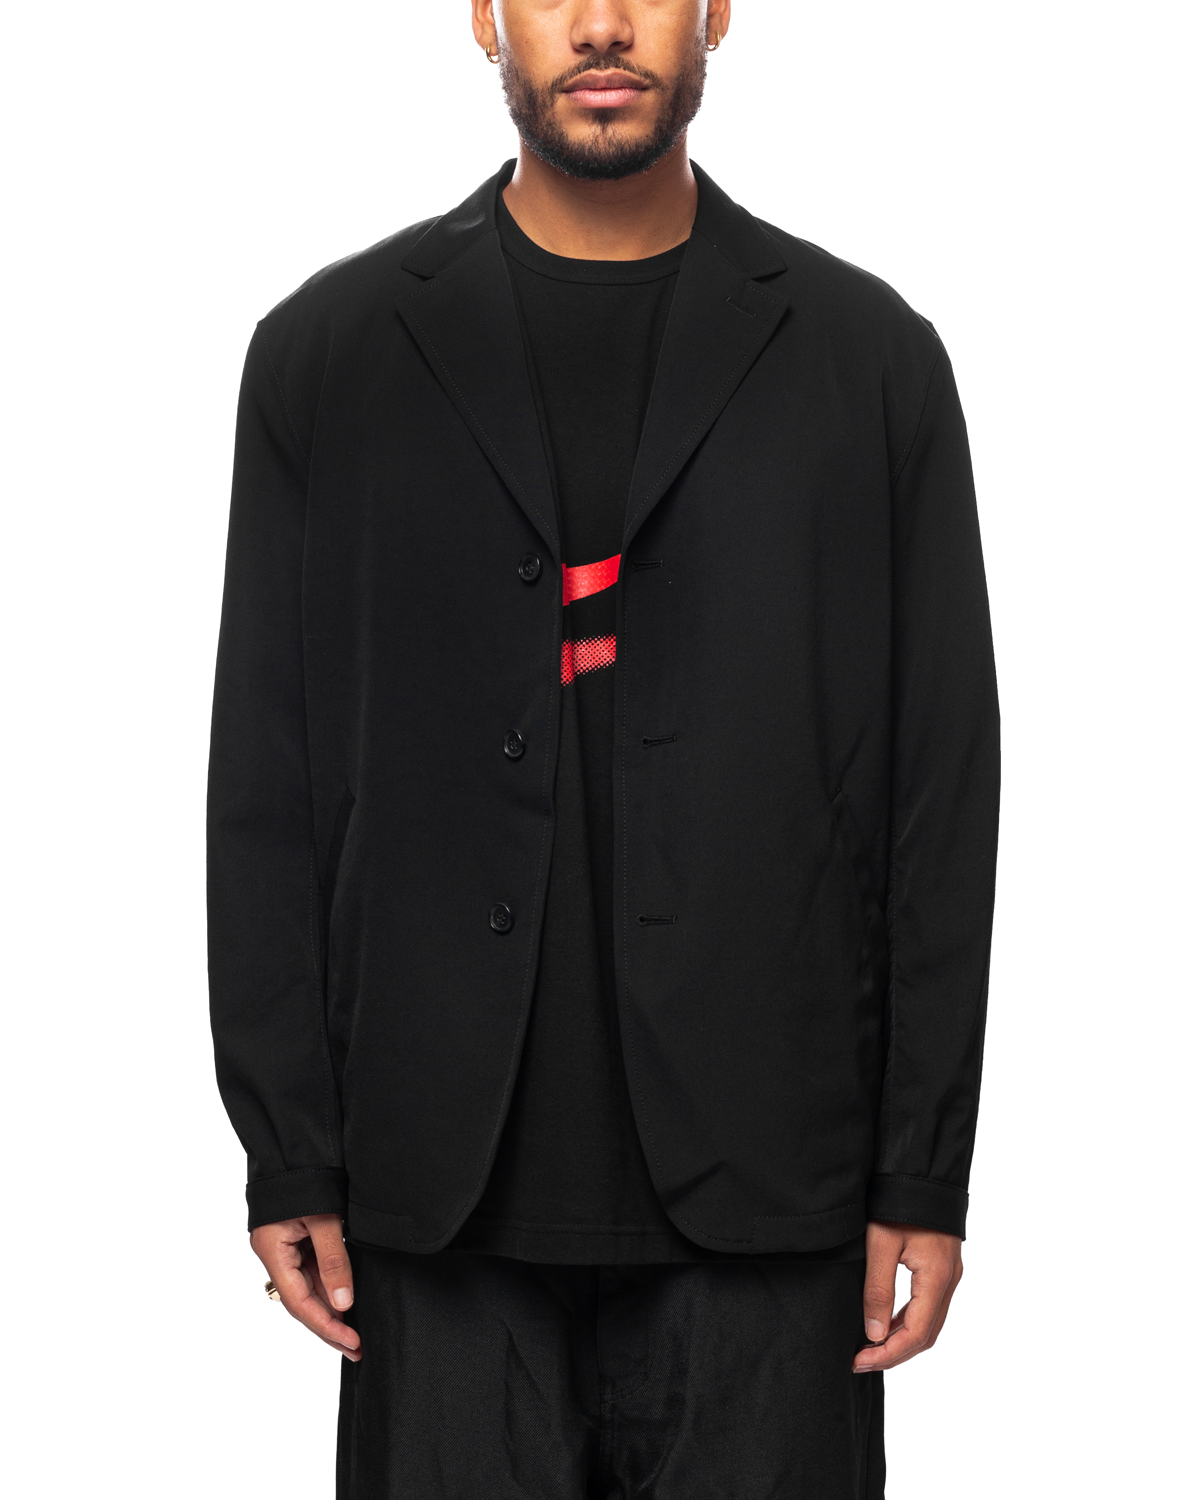 Men's Jacket Black HL-J102-051